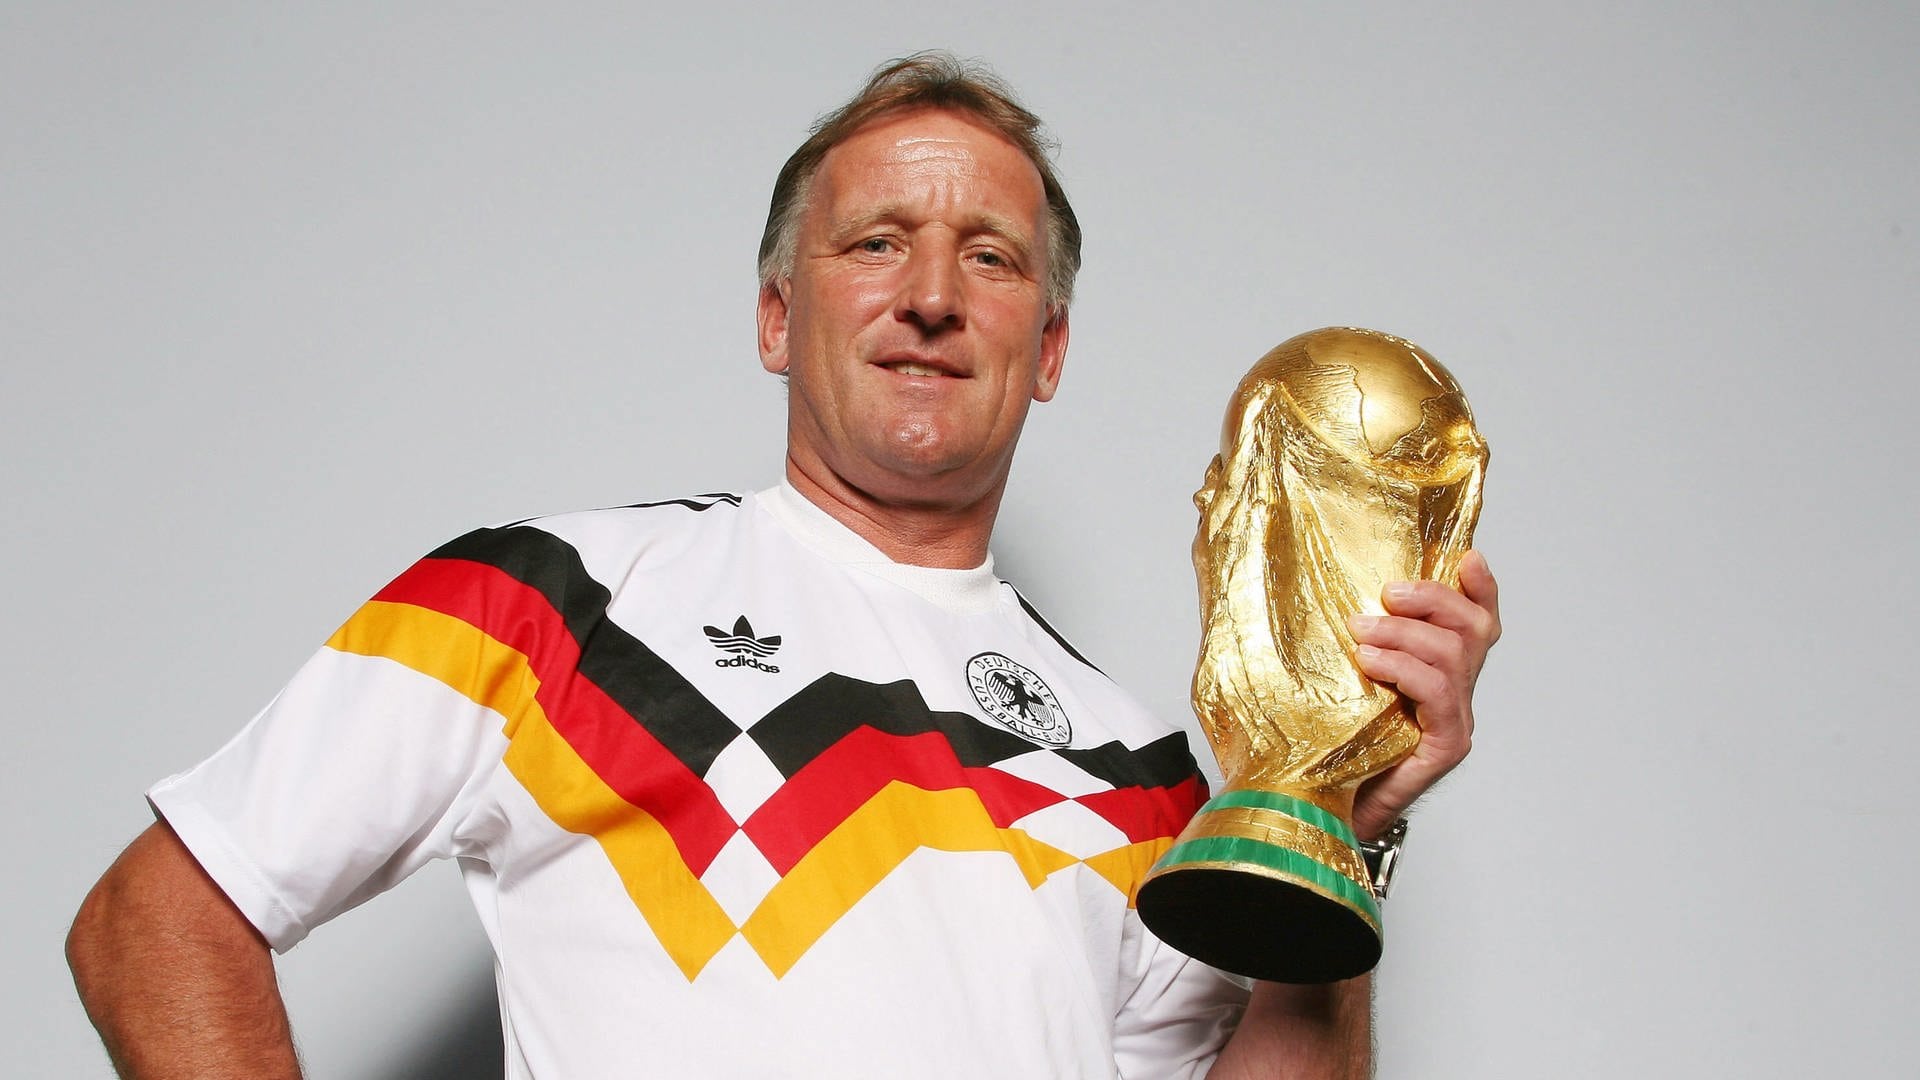 Andreas Brehme mit Original WM-Trikots und Pokal vom WM-Sieg 1990 am 10.06.2007 in Nürnberg